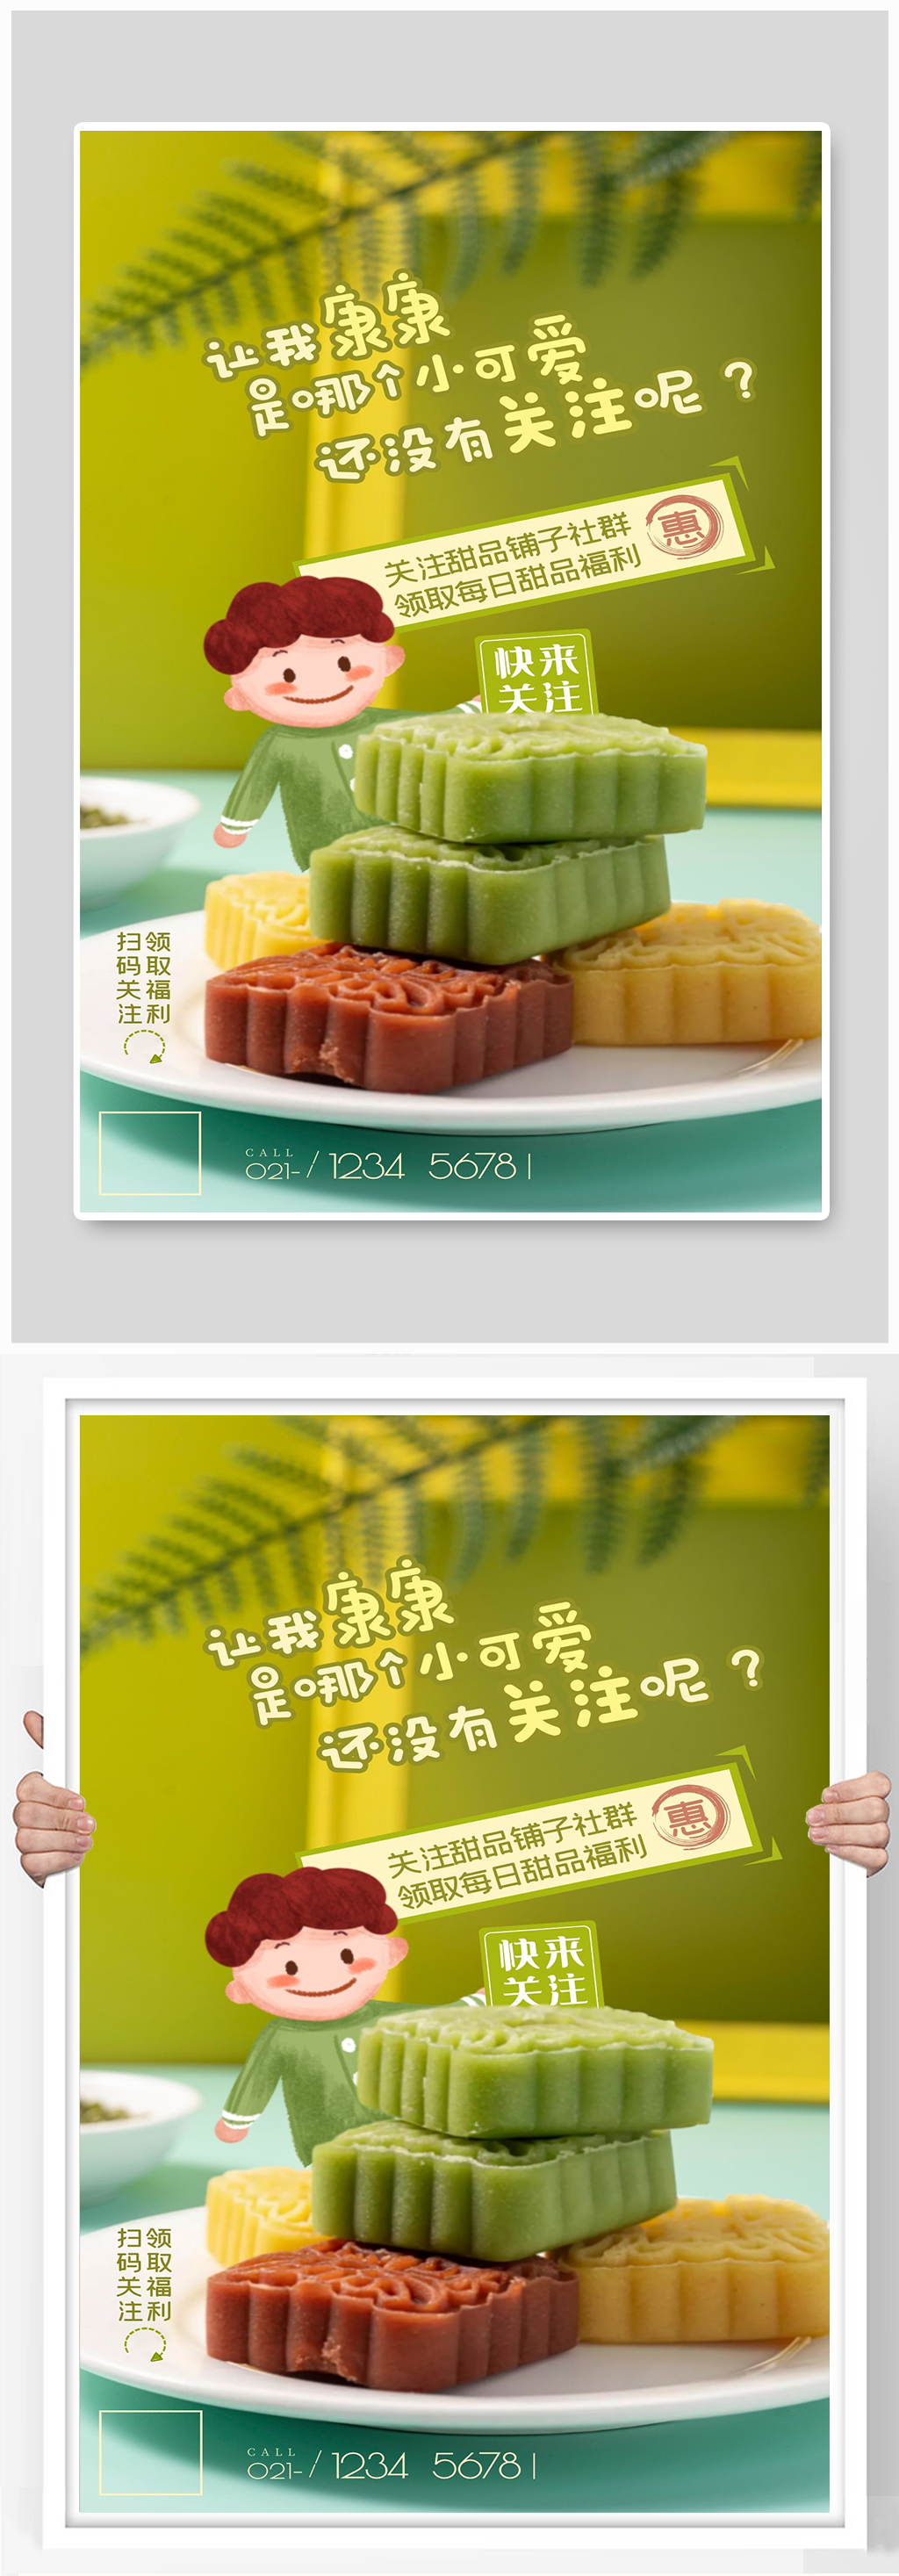 甜品每日福利绿豆糕美食甜点宣传海报